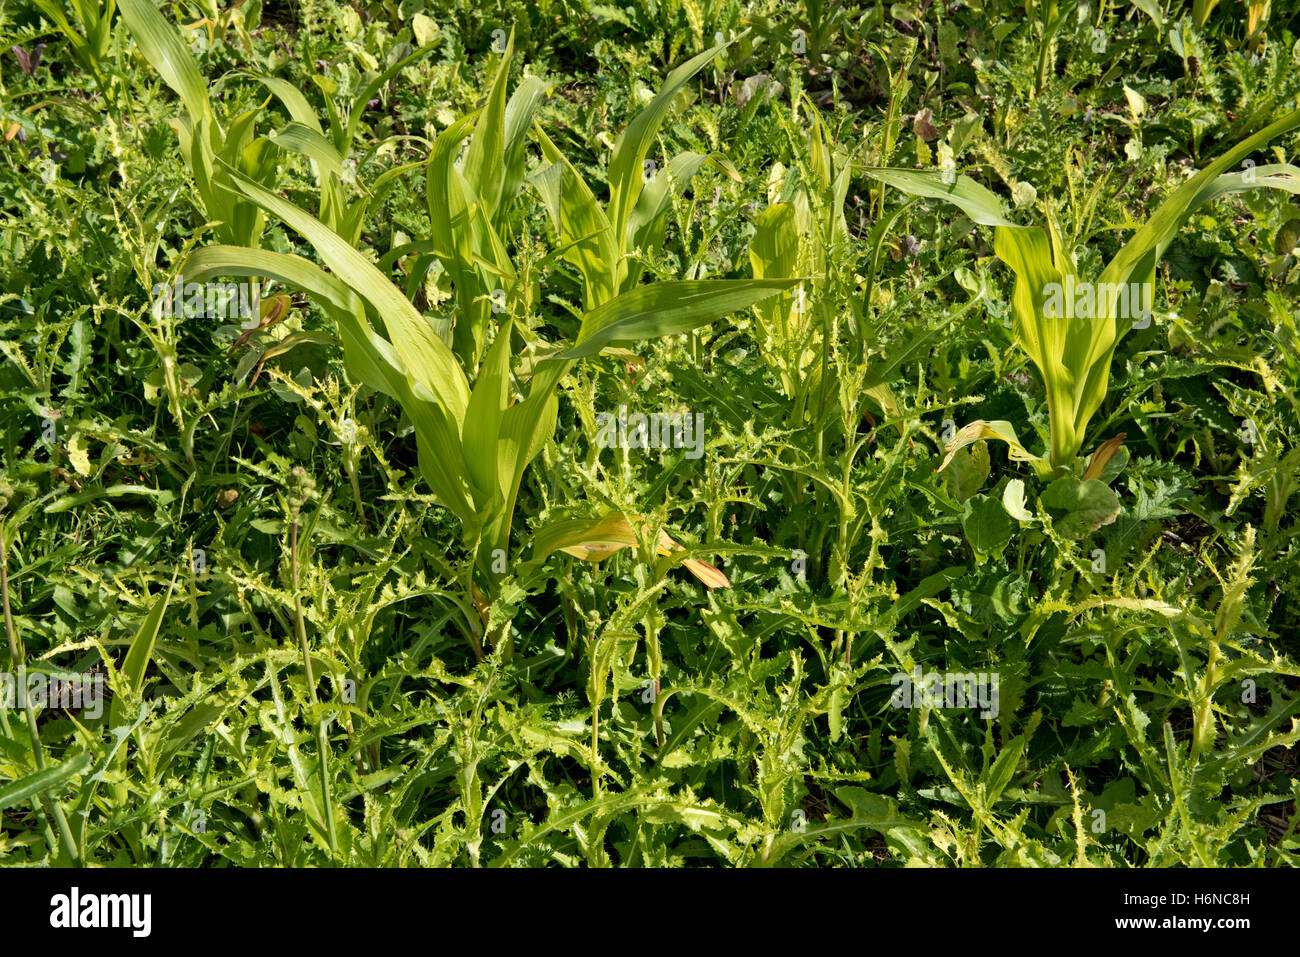 Stachelige Sau-Distel, Sonchus Asper, Unkraut in einem jungen Mais oder Mais Ernte auf steinigen Kreide Boden, August Stockfoto